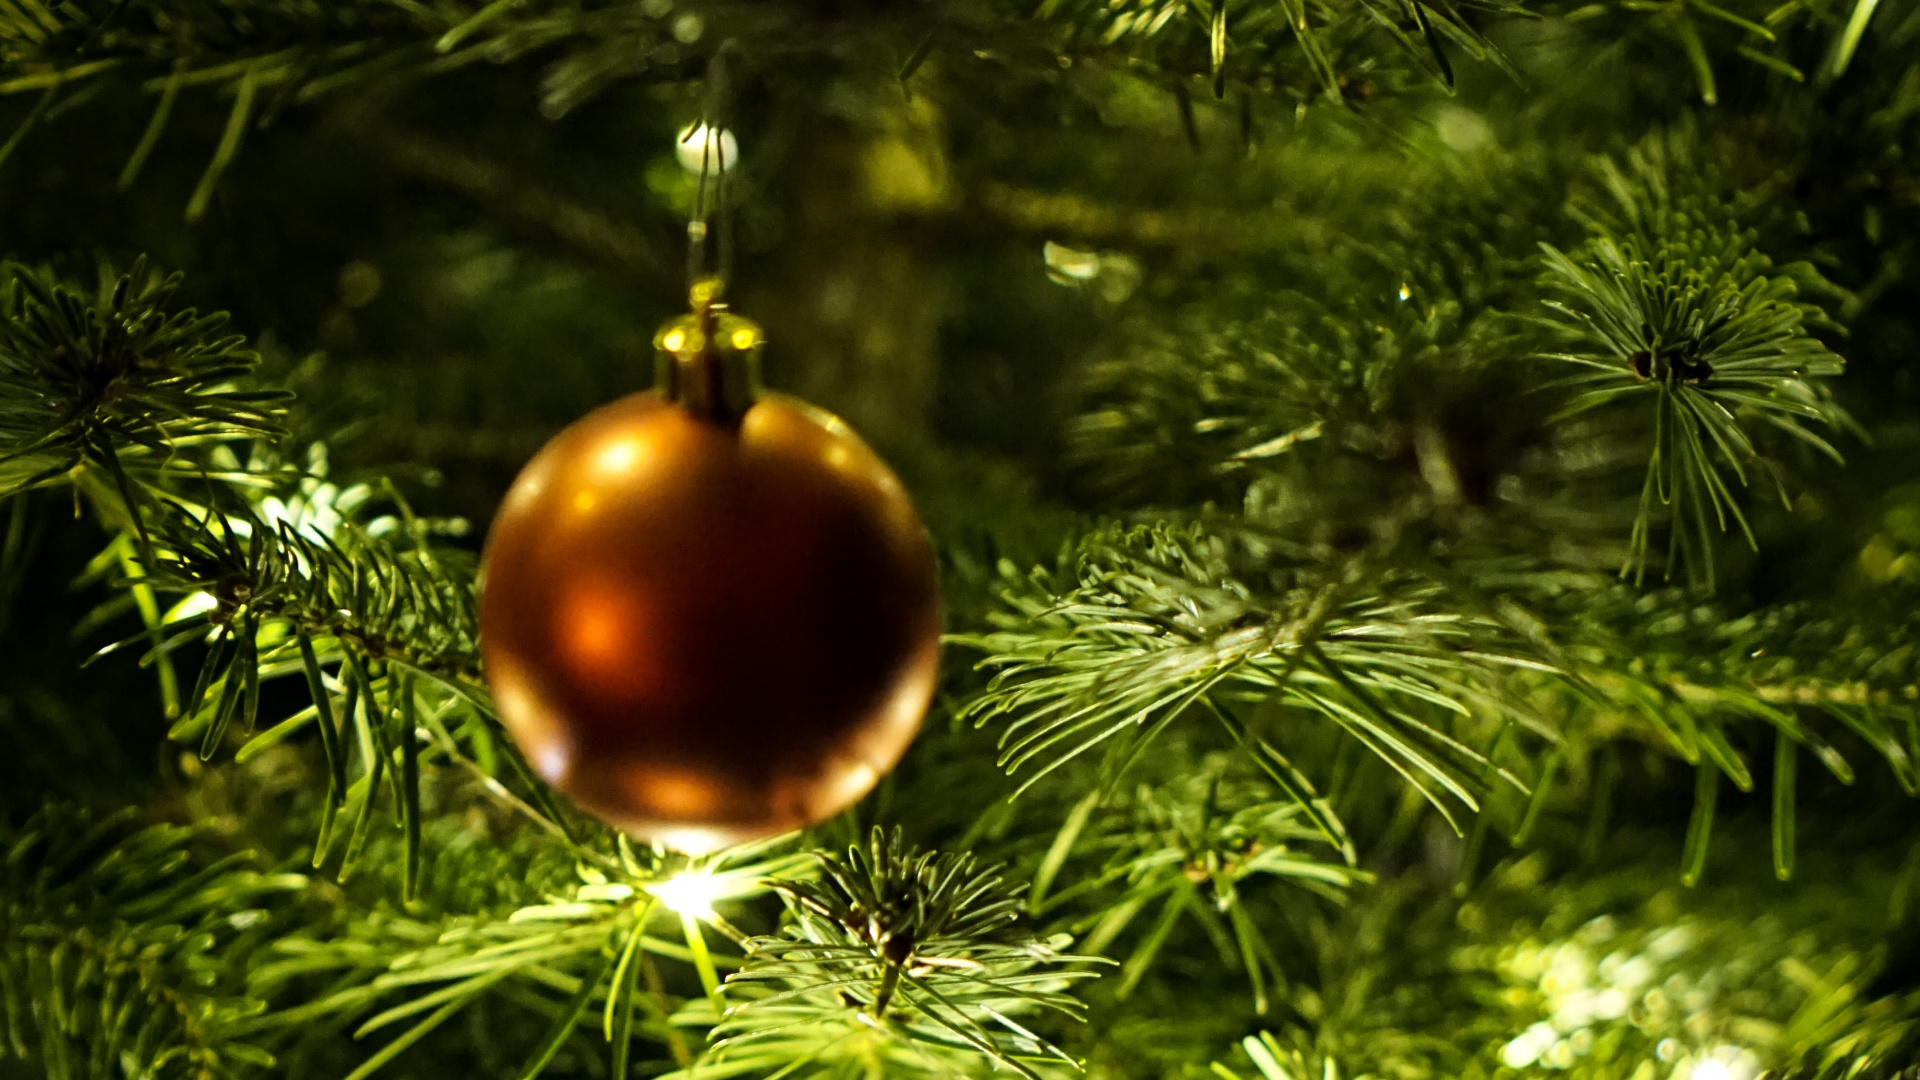 新的一年, 圣诞节那天, 圣诞节的装饰品, 圣诞装饰, 圣诞树 壁纸 1920x1080 允许